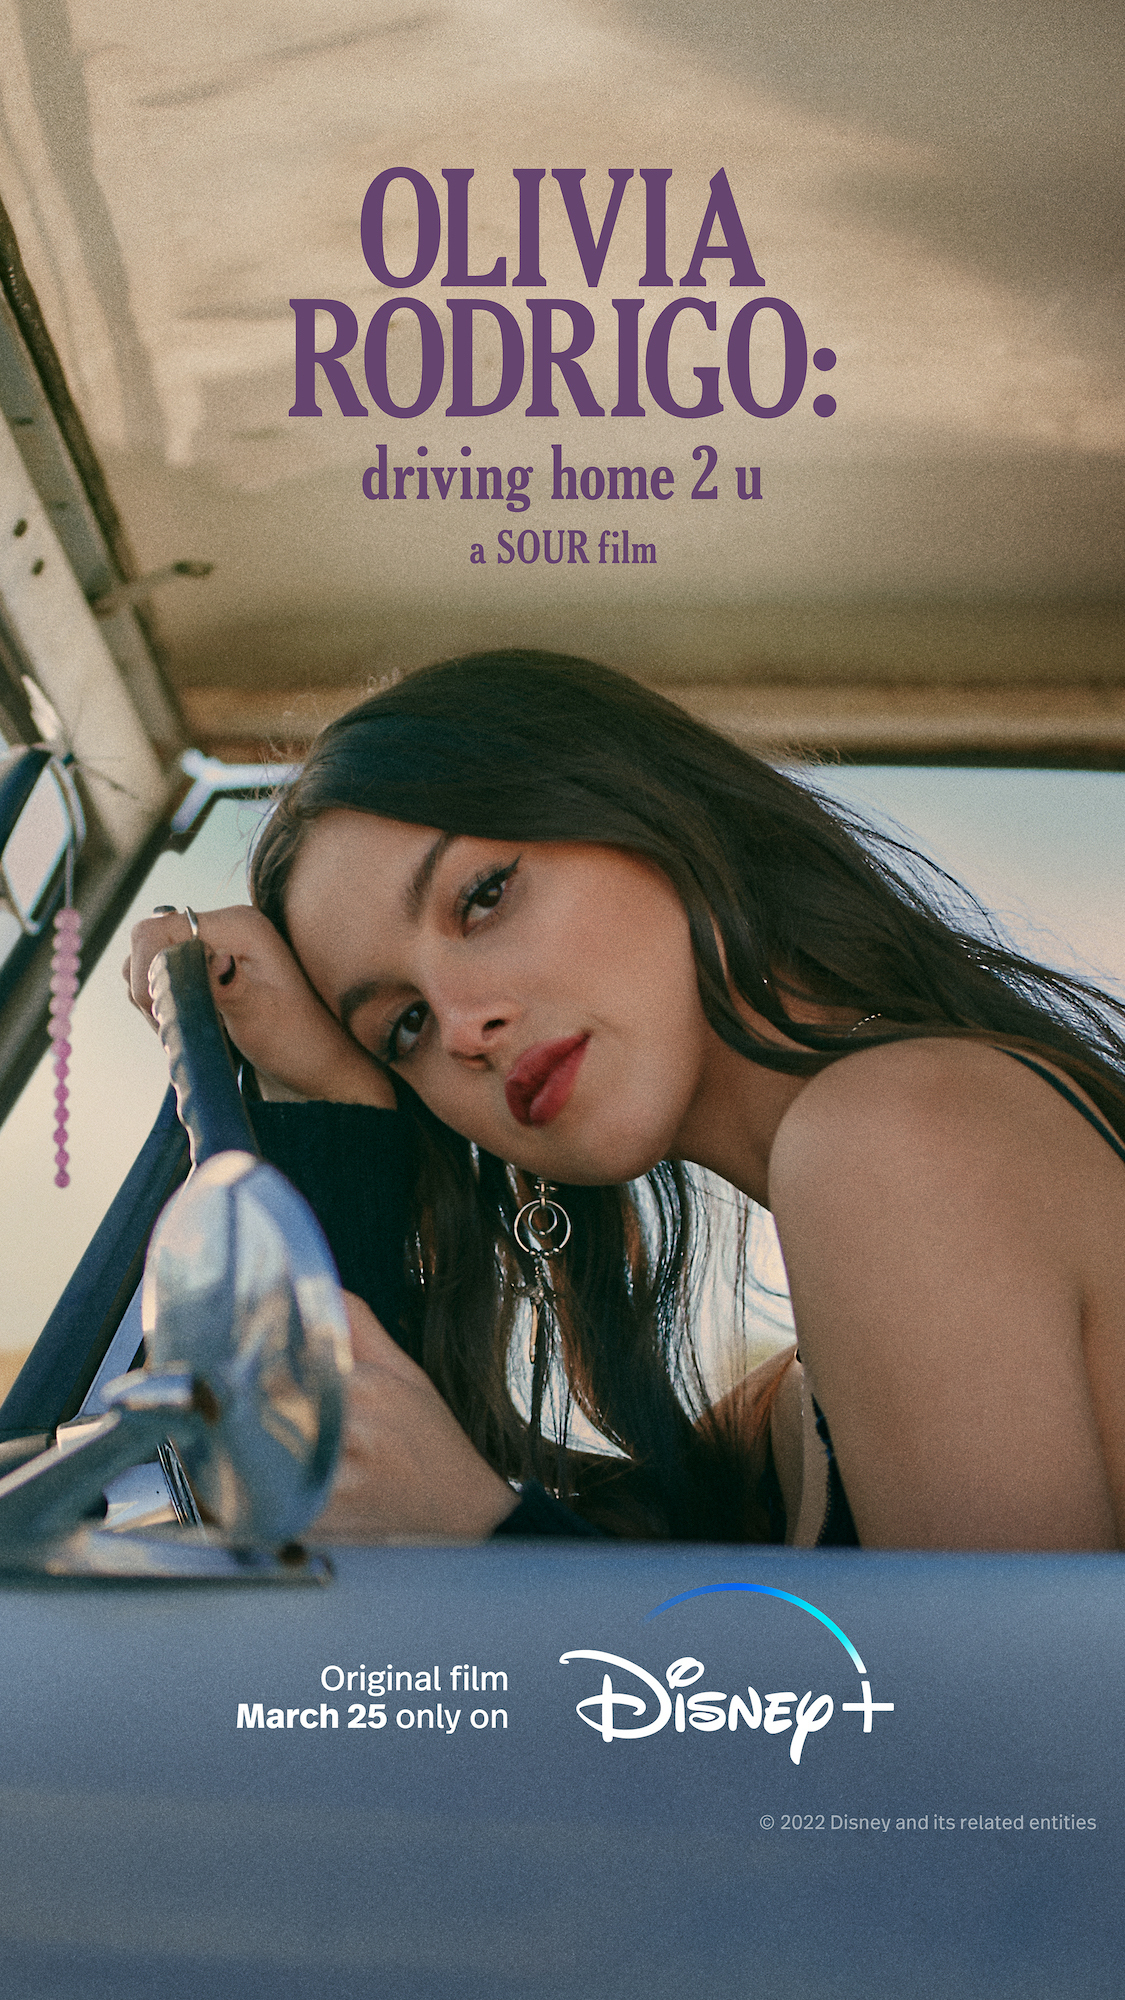 ดูหนังออนไลน์ Olivia Rodrigo Driving Home 2 U (2022) โอลิเวีย โรดริโก ไดรฟวิ่งโฮม ทู ยู (ซับไทย)